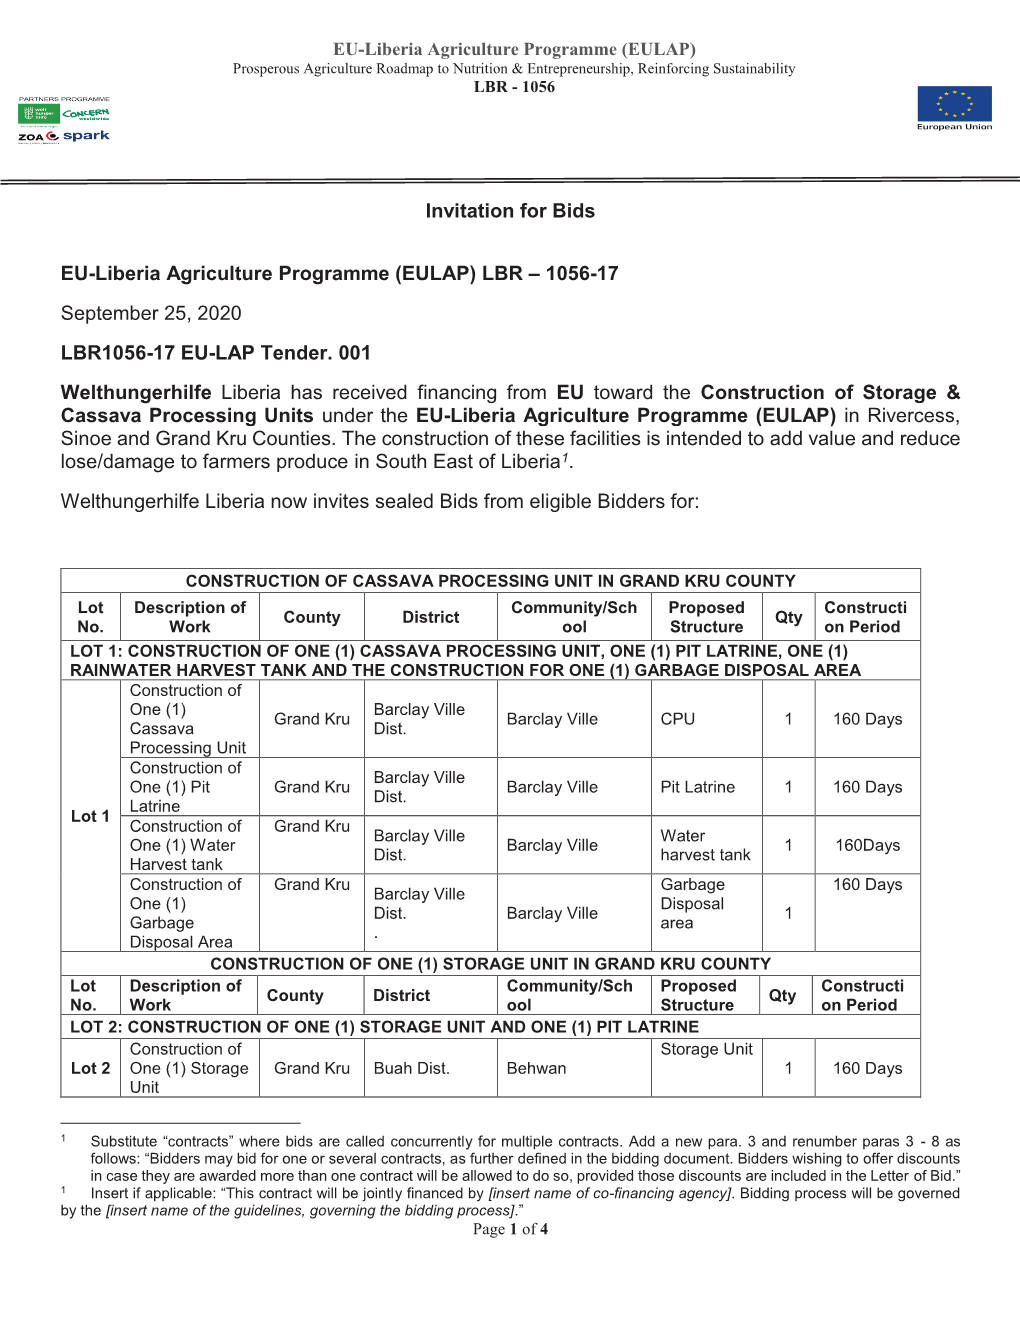 LBR 1056-17 EULAP Tenders.001-Returnable Bid